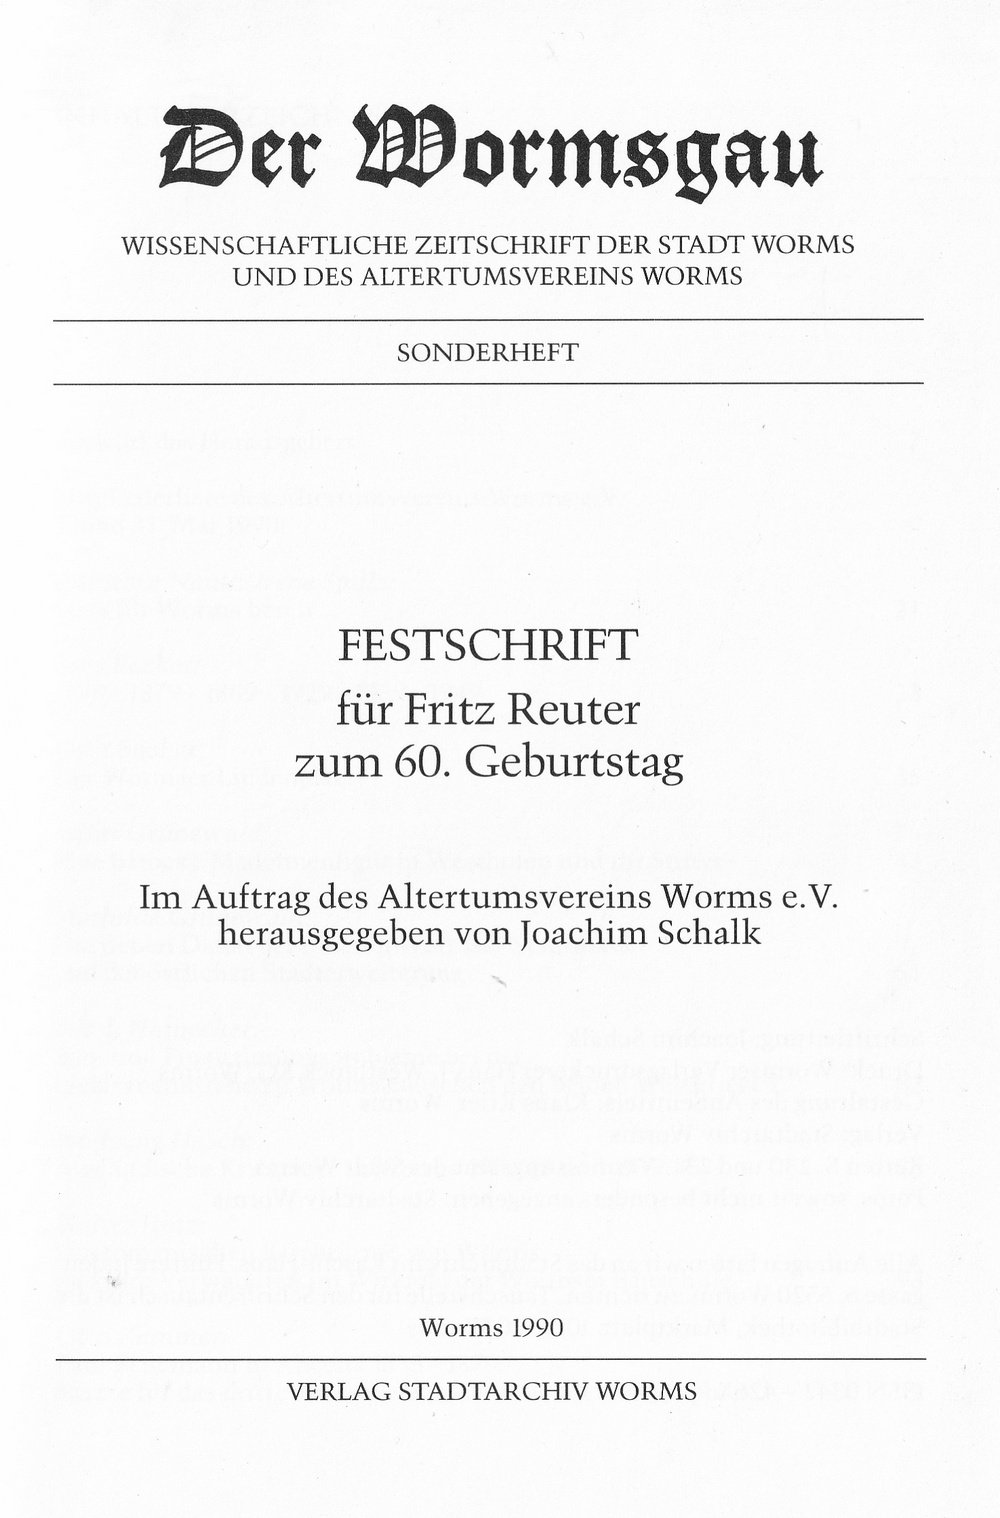 Festschrift für Fritz Reuter zum 60. Geburtstag (1990) (Kulturverein Guntersblum CC BY-NC-SA)